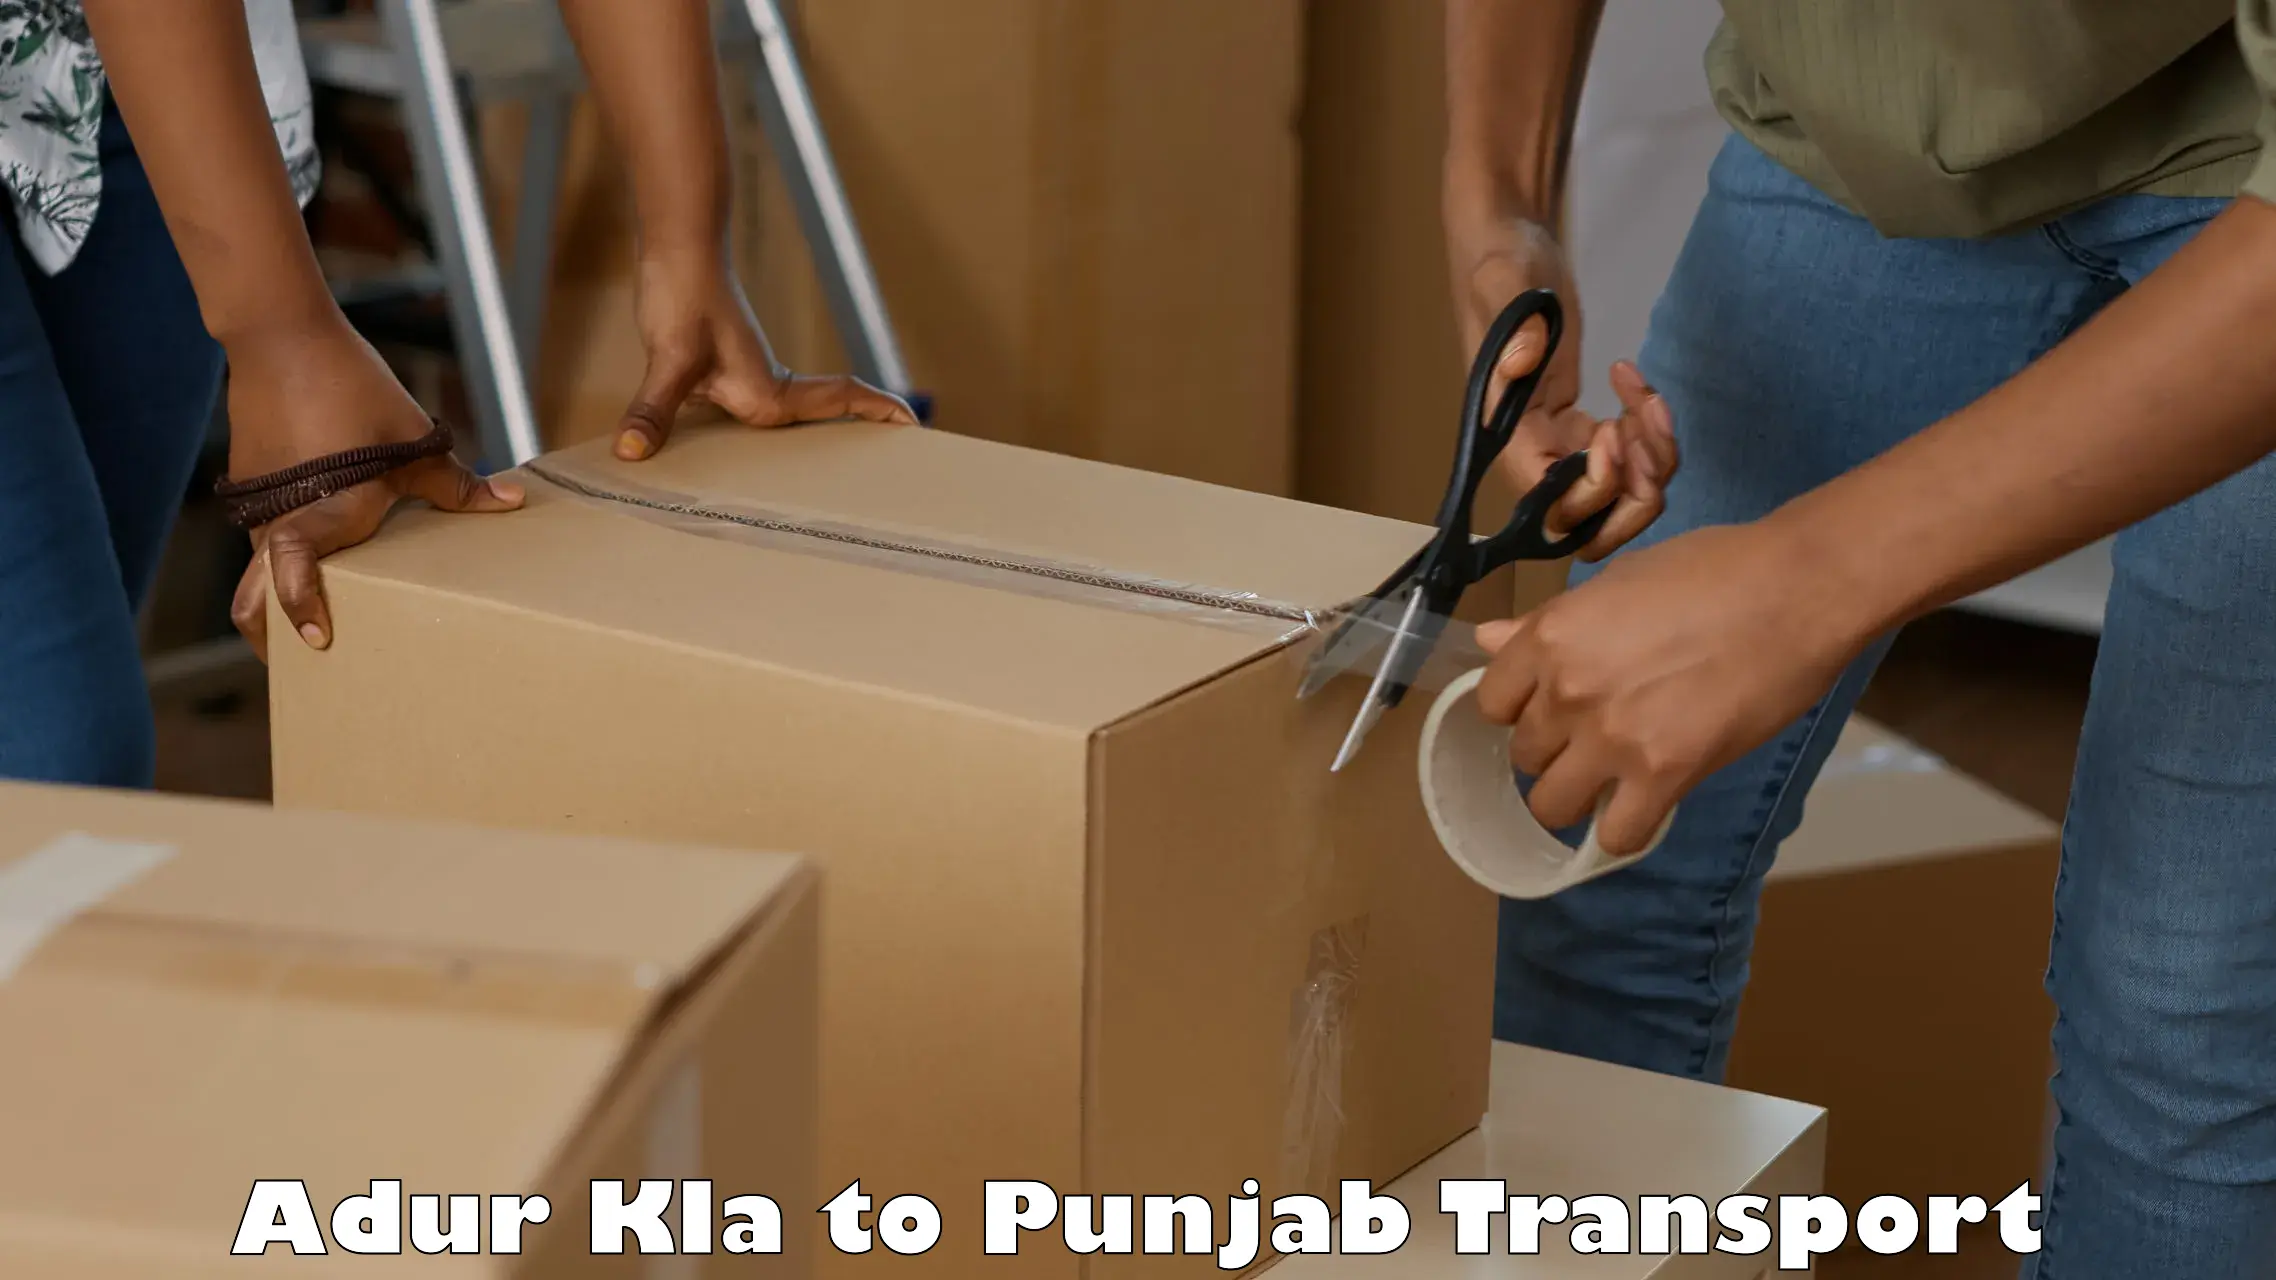 Furniture transport service Adur Kla to Jalandhar